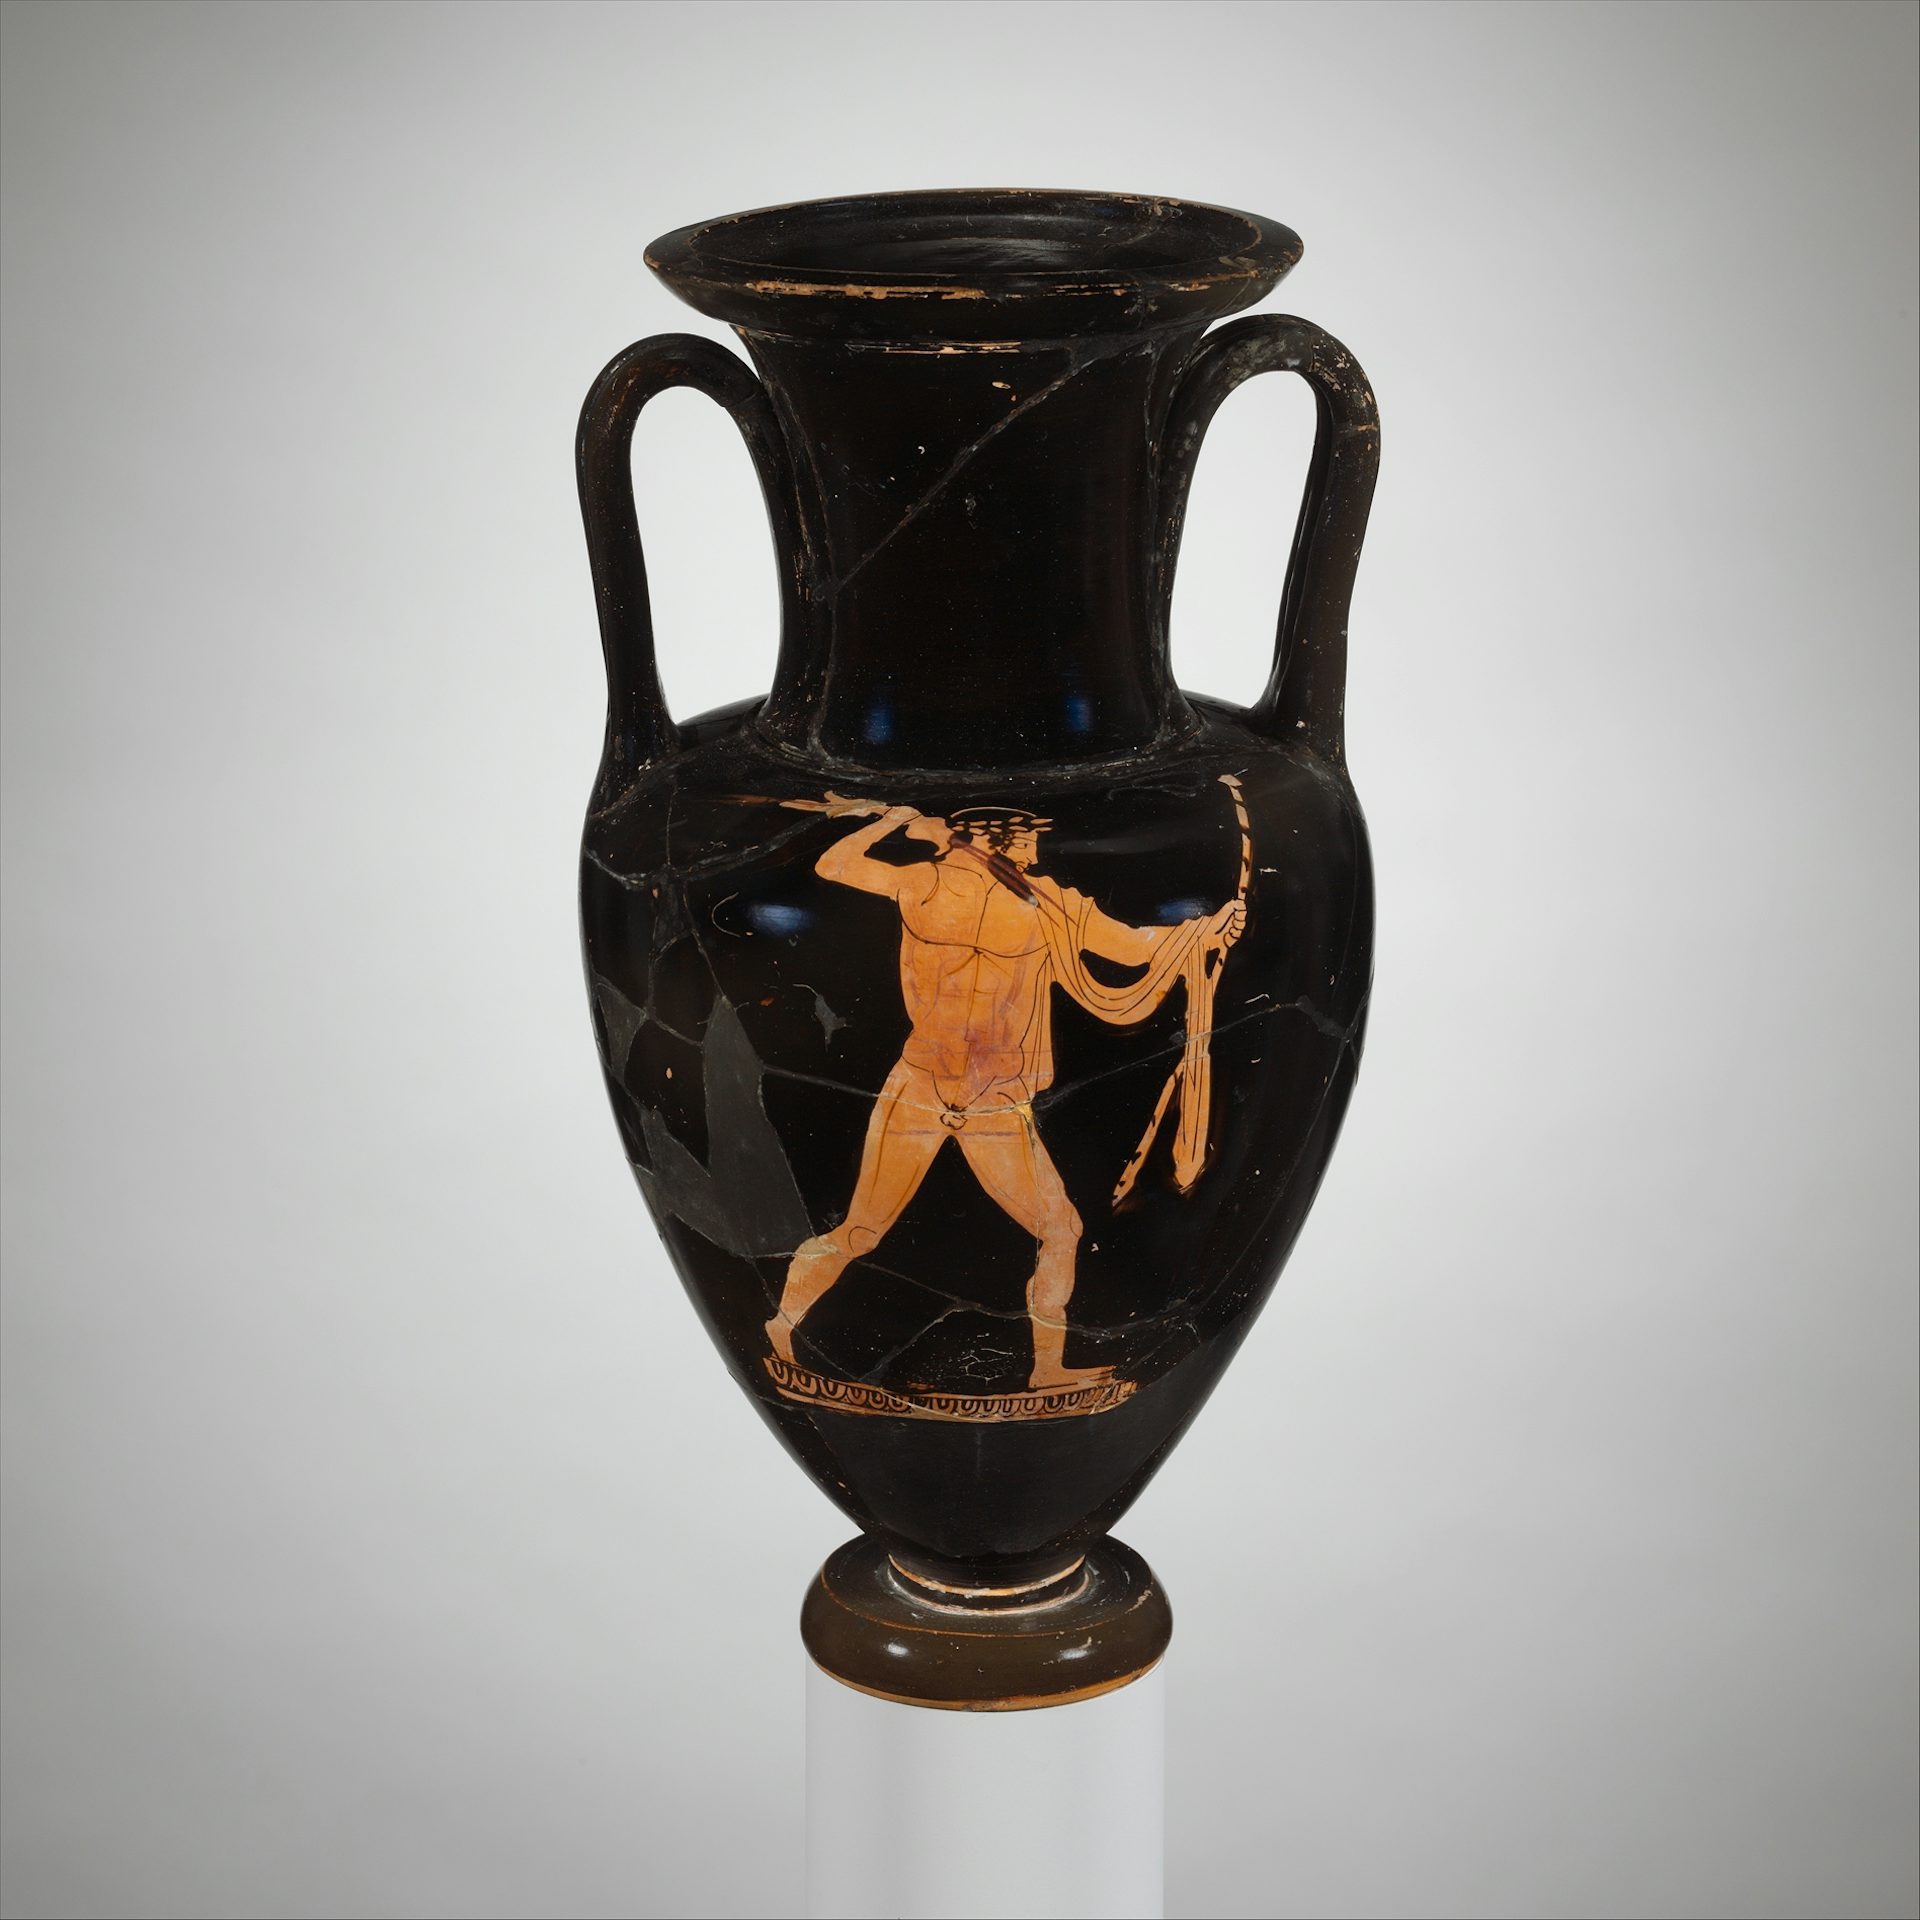 Vase painting of Zeus